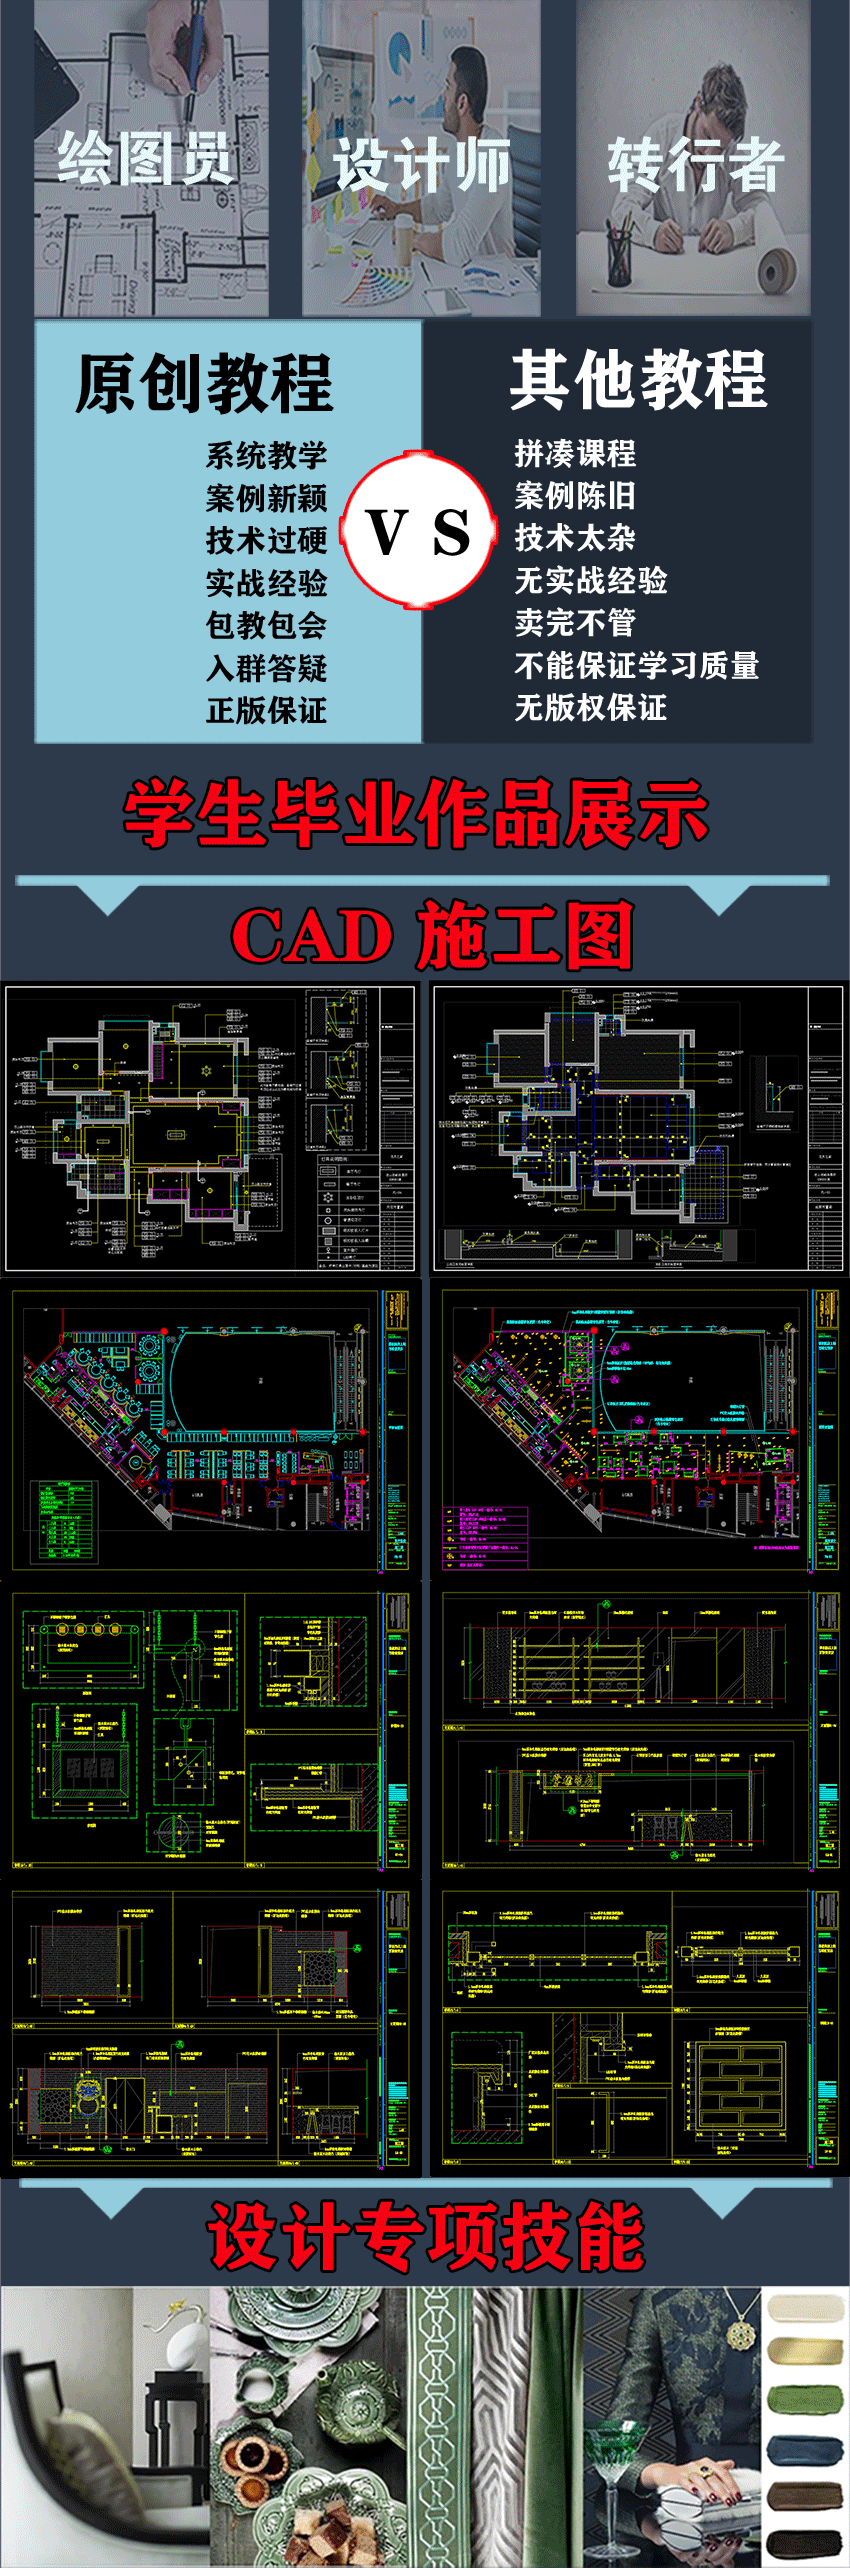 室内设计CAD施工图3dmax效果图PS平面设计